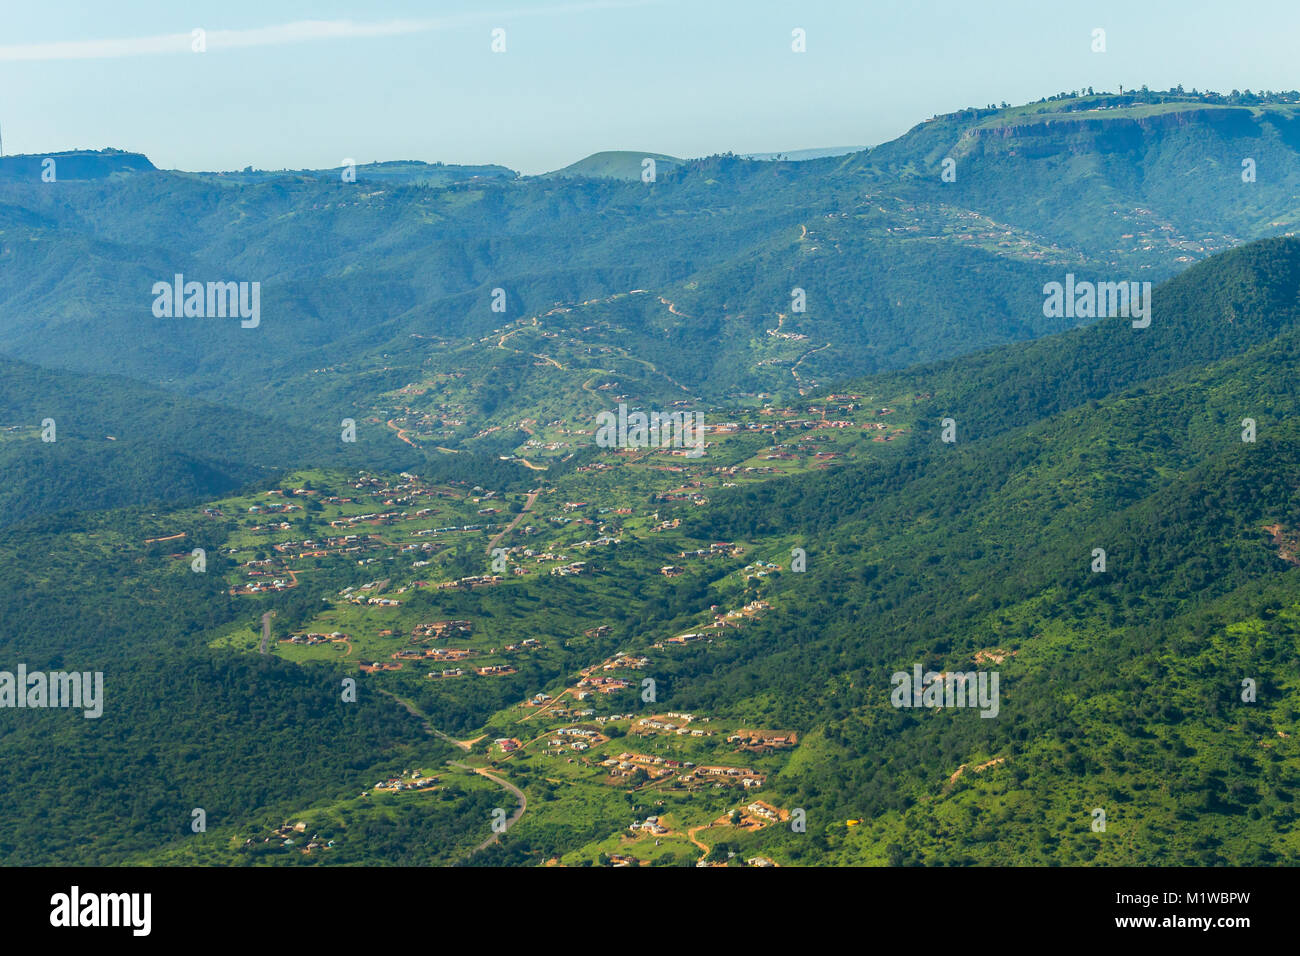 Vue d'oiseau-oeil vol Afrique Du Sud rural paysage montagnes vallées Inanda Inchanga avec foyers tribaux sur le paysage vert de l'été photo. Banque D'Images